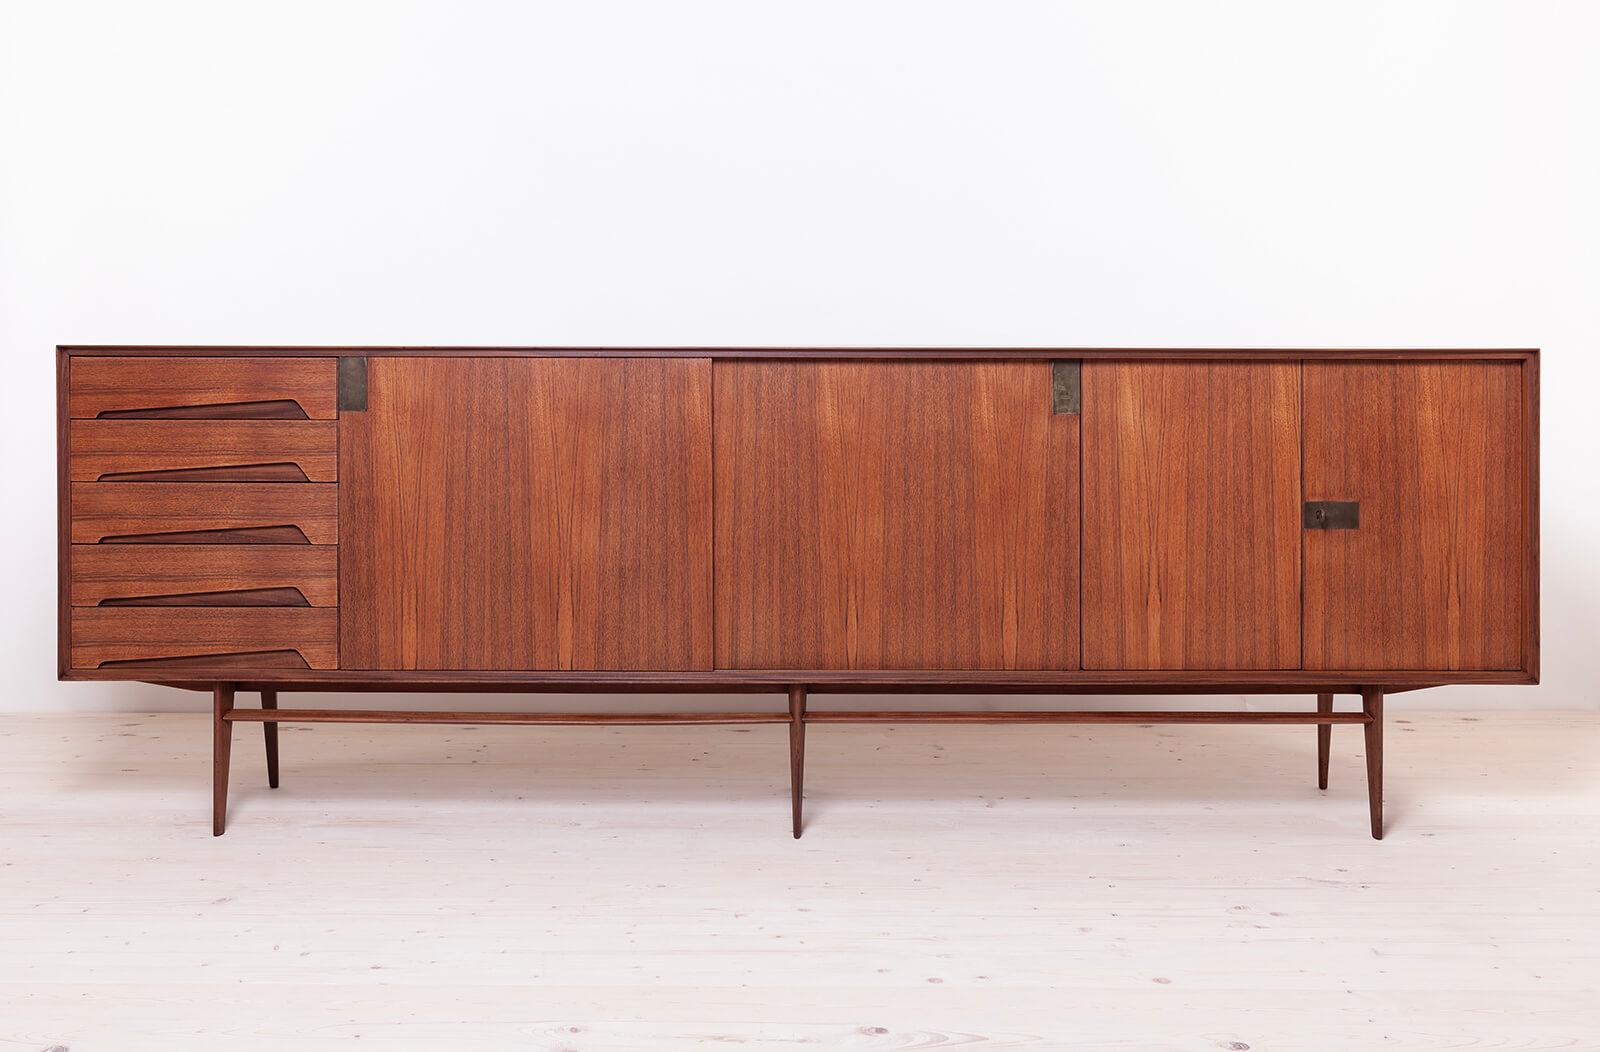 Dieses exquisite Sideboard ist ein wahres Meisterwerk, das Edmondo Palutari in den 1950er Jahren für Mobili Dassi Moderni entworfen hat. Dieses außergewöhnliche Stück vereint schönes italienisches Design und Funktion und ist damit ein Muss für